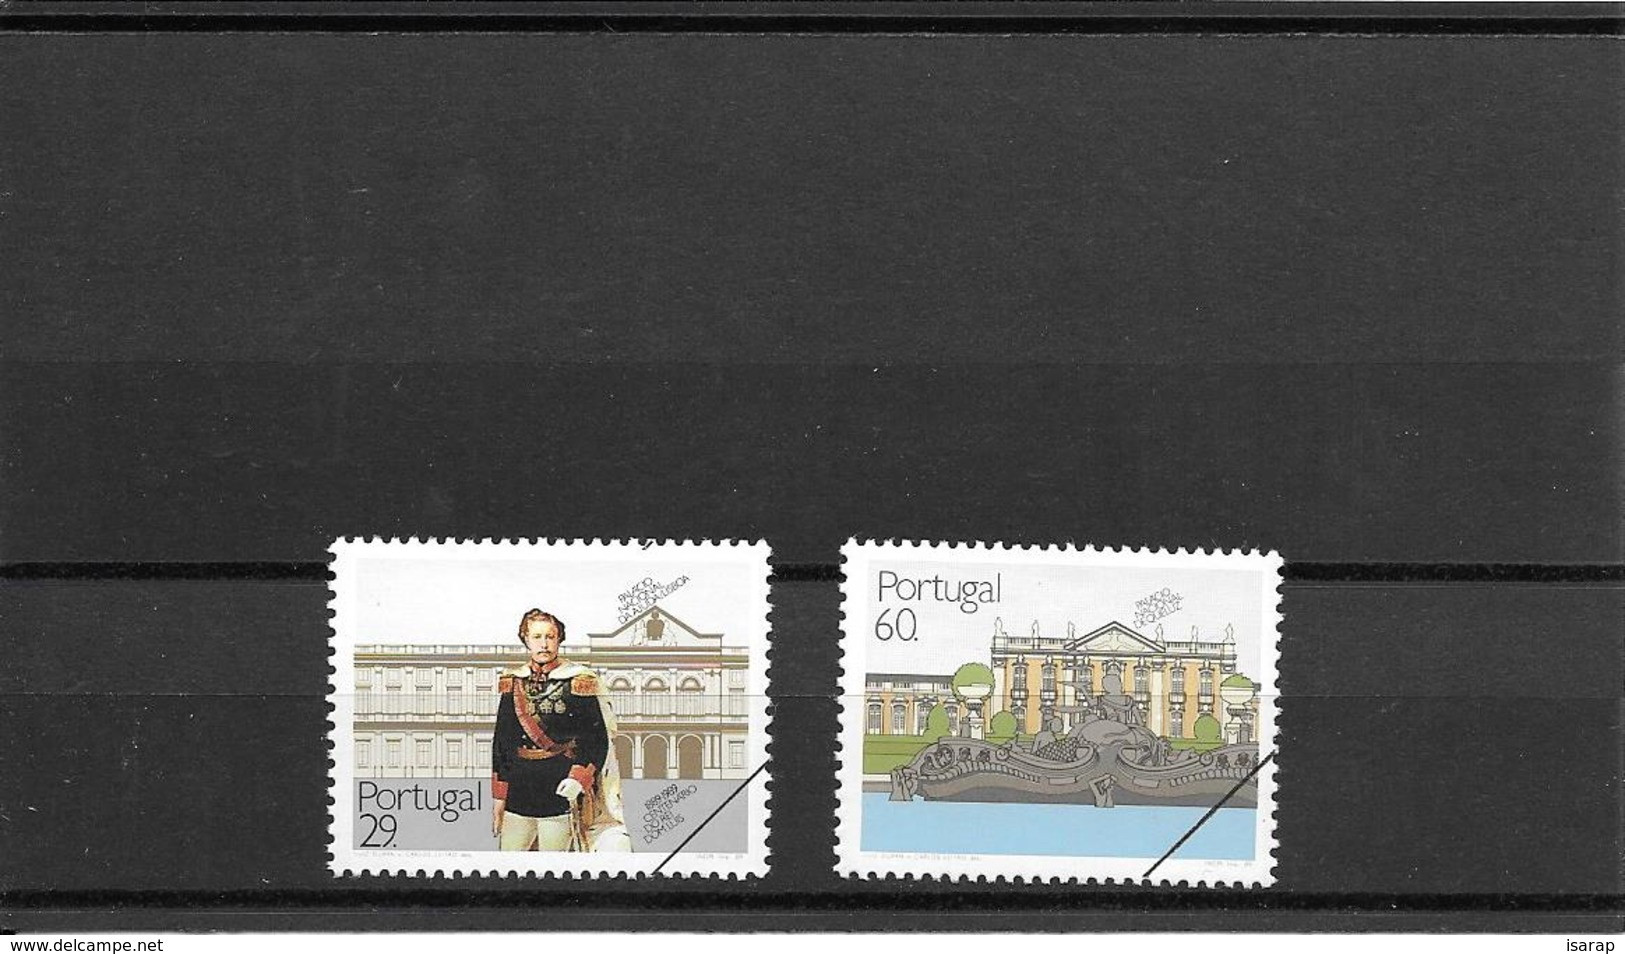 PROOF - 1990 - Palácios Nacionais - Unused Stamps